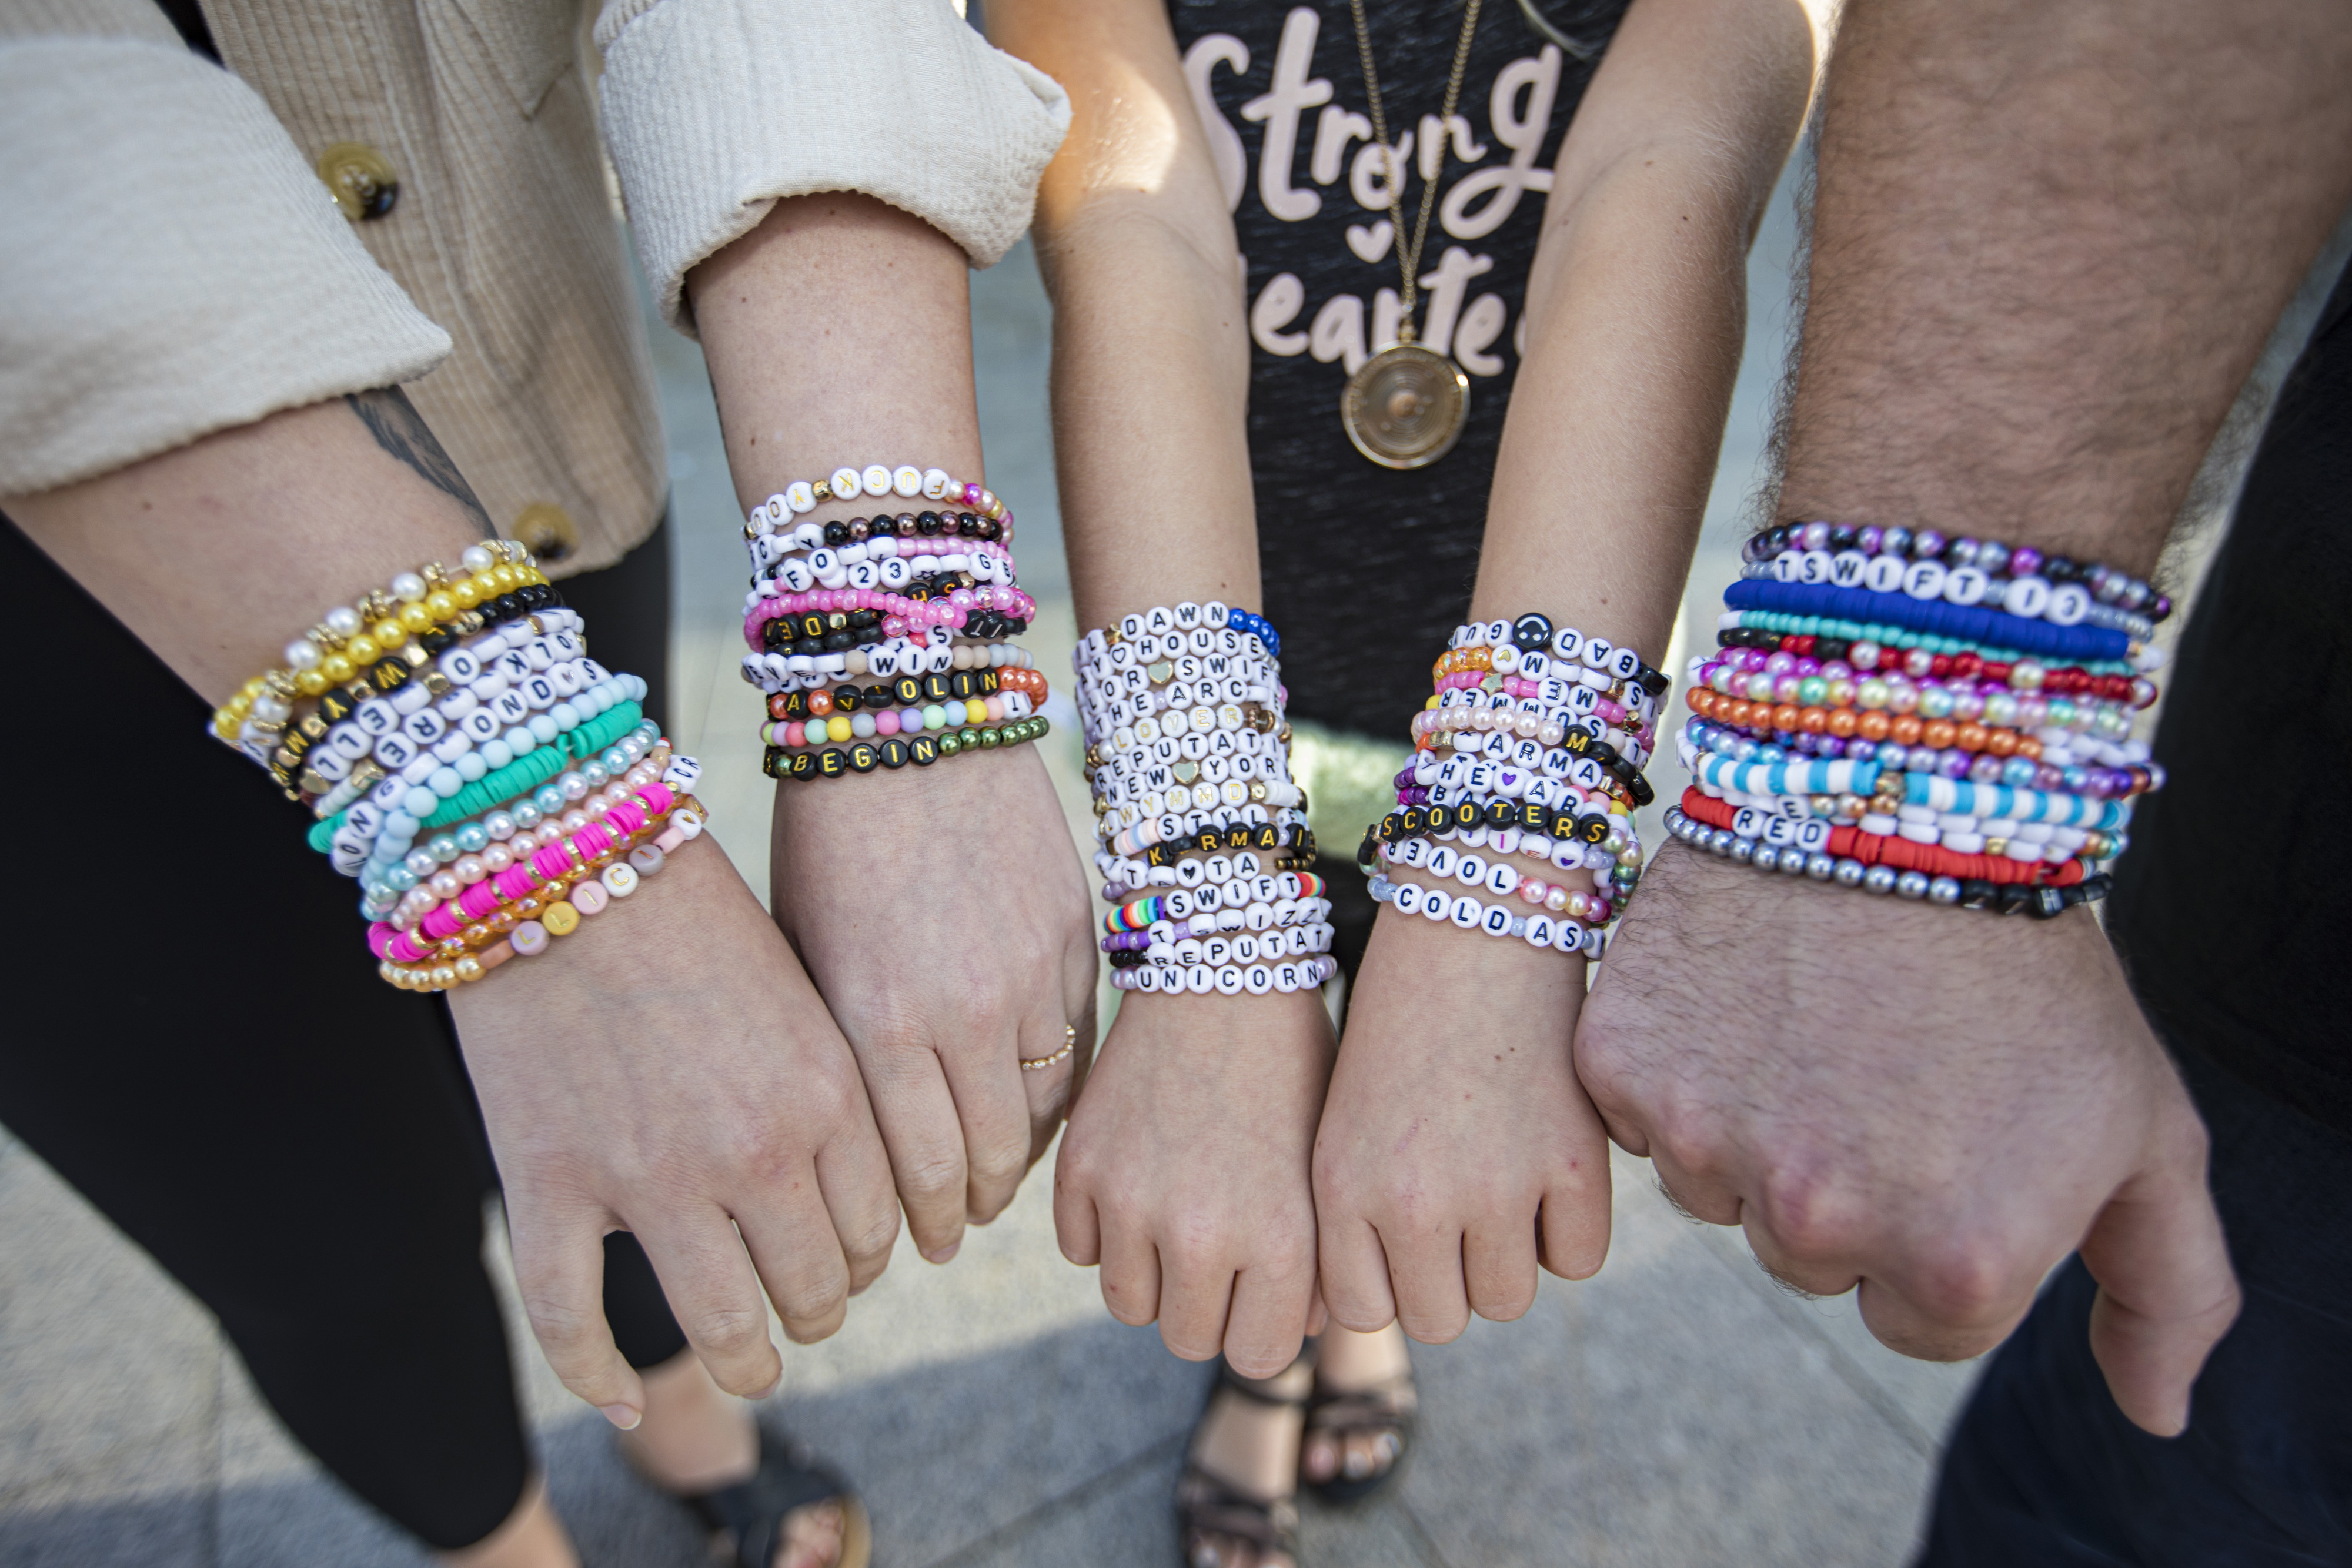 Fans wearing friendship bracelets